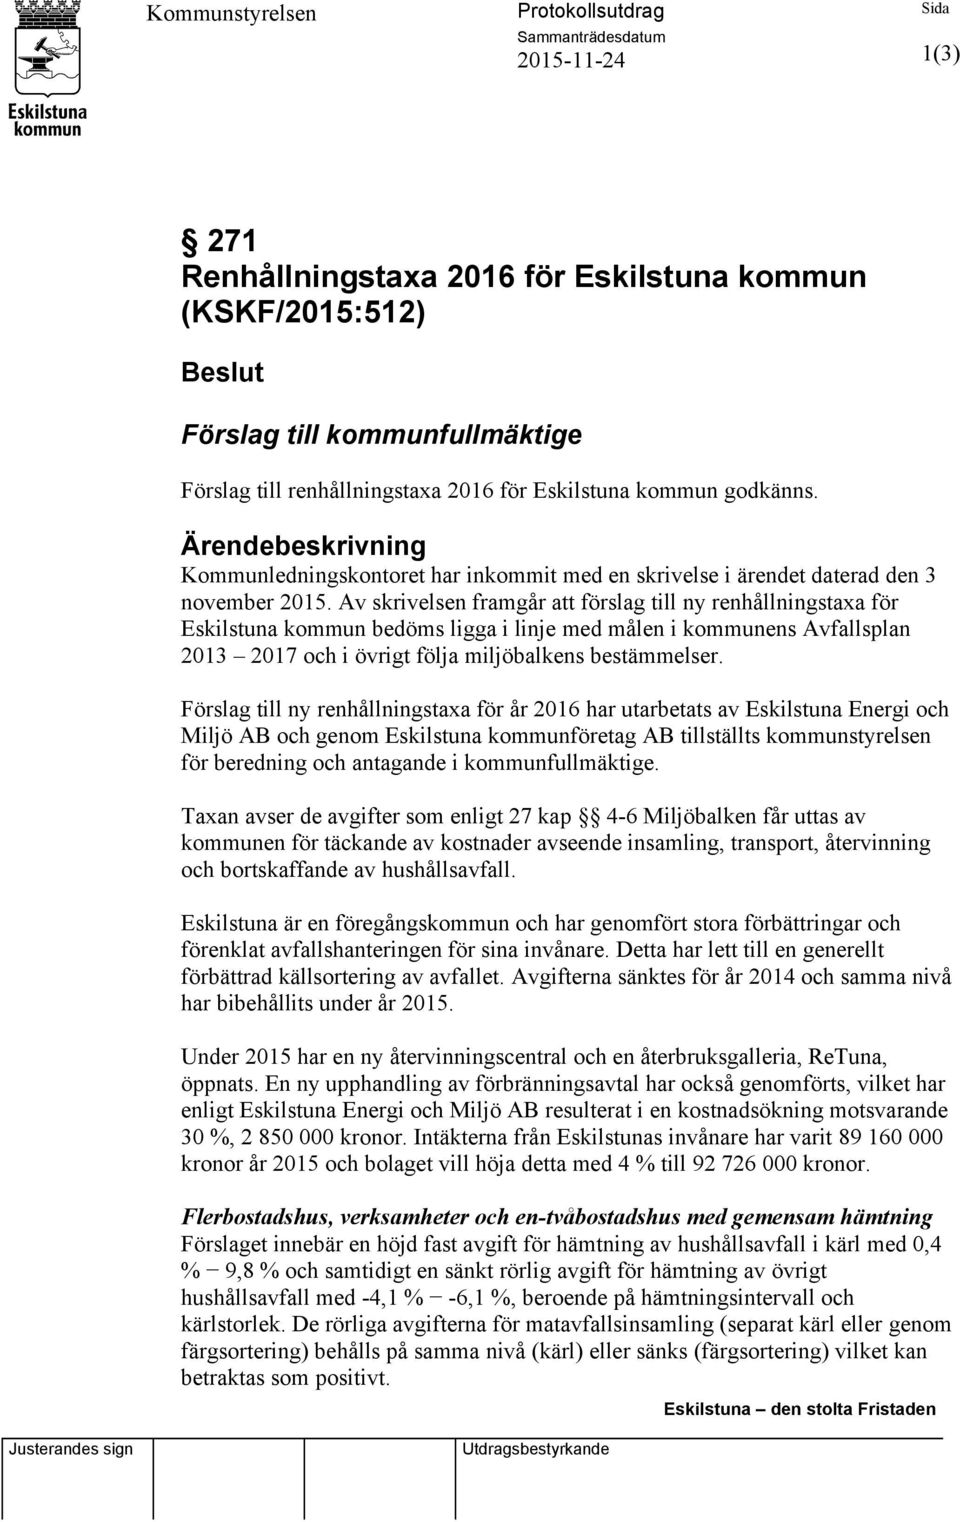 Av skrivelsen framgår att förslag till ny renhållningstaxa för Eskilstuna kommun bedöms ligga i linje med målen i kommunens Avfallsplan 2013 2017 och i övrigt följa miljöbalkens bestämmelser.